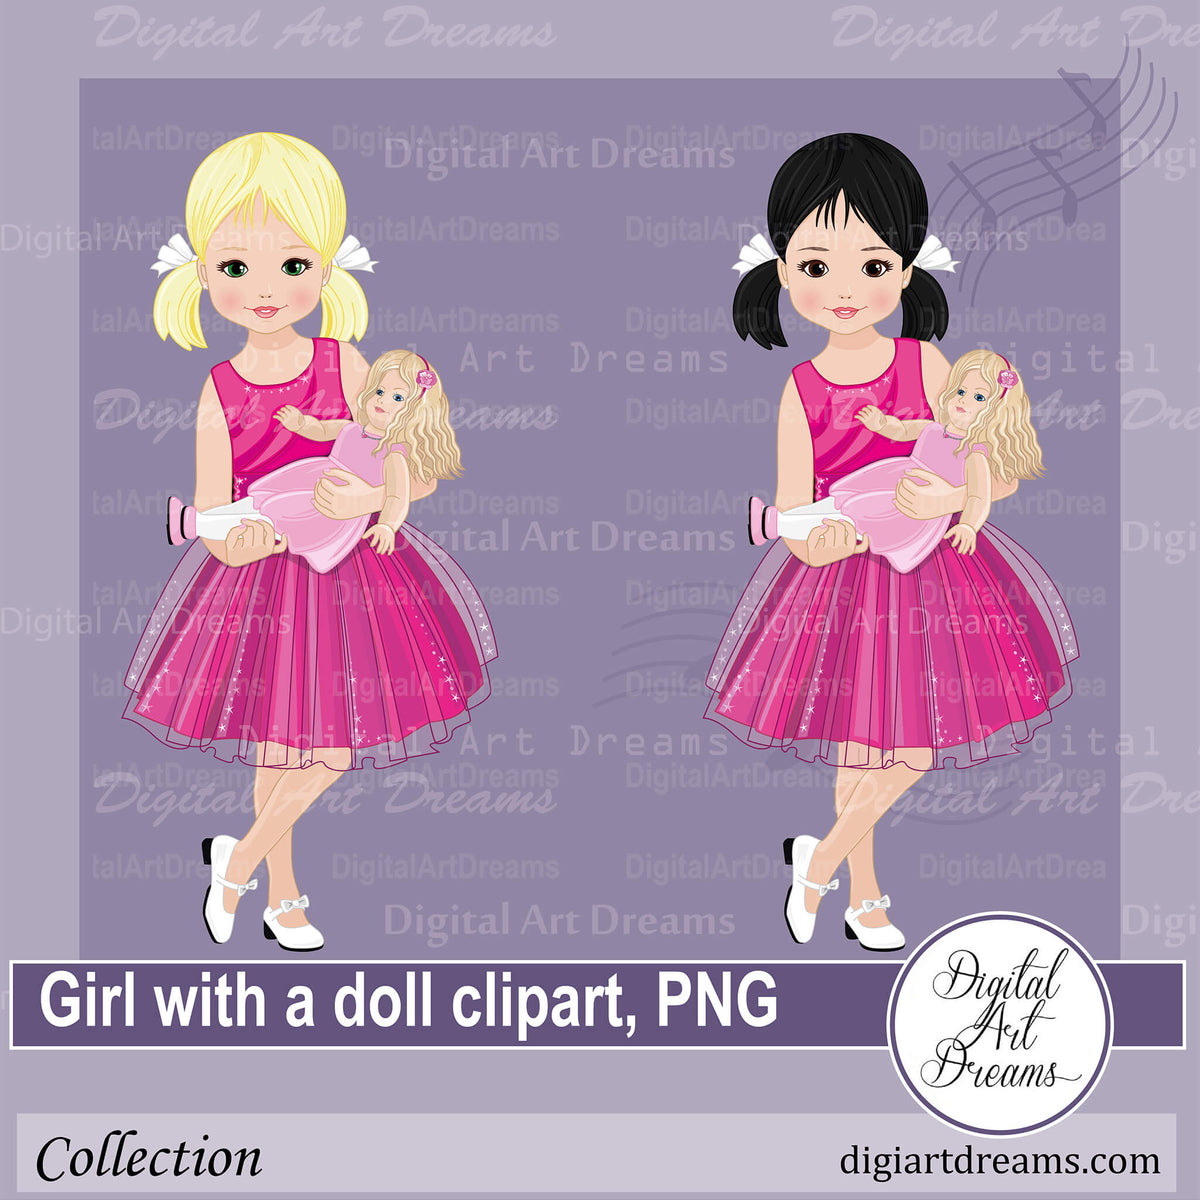 girl paper doll clip art